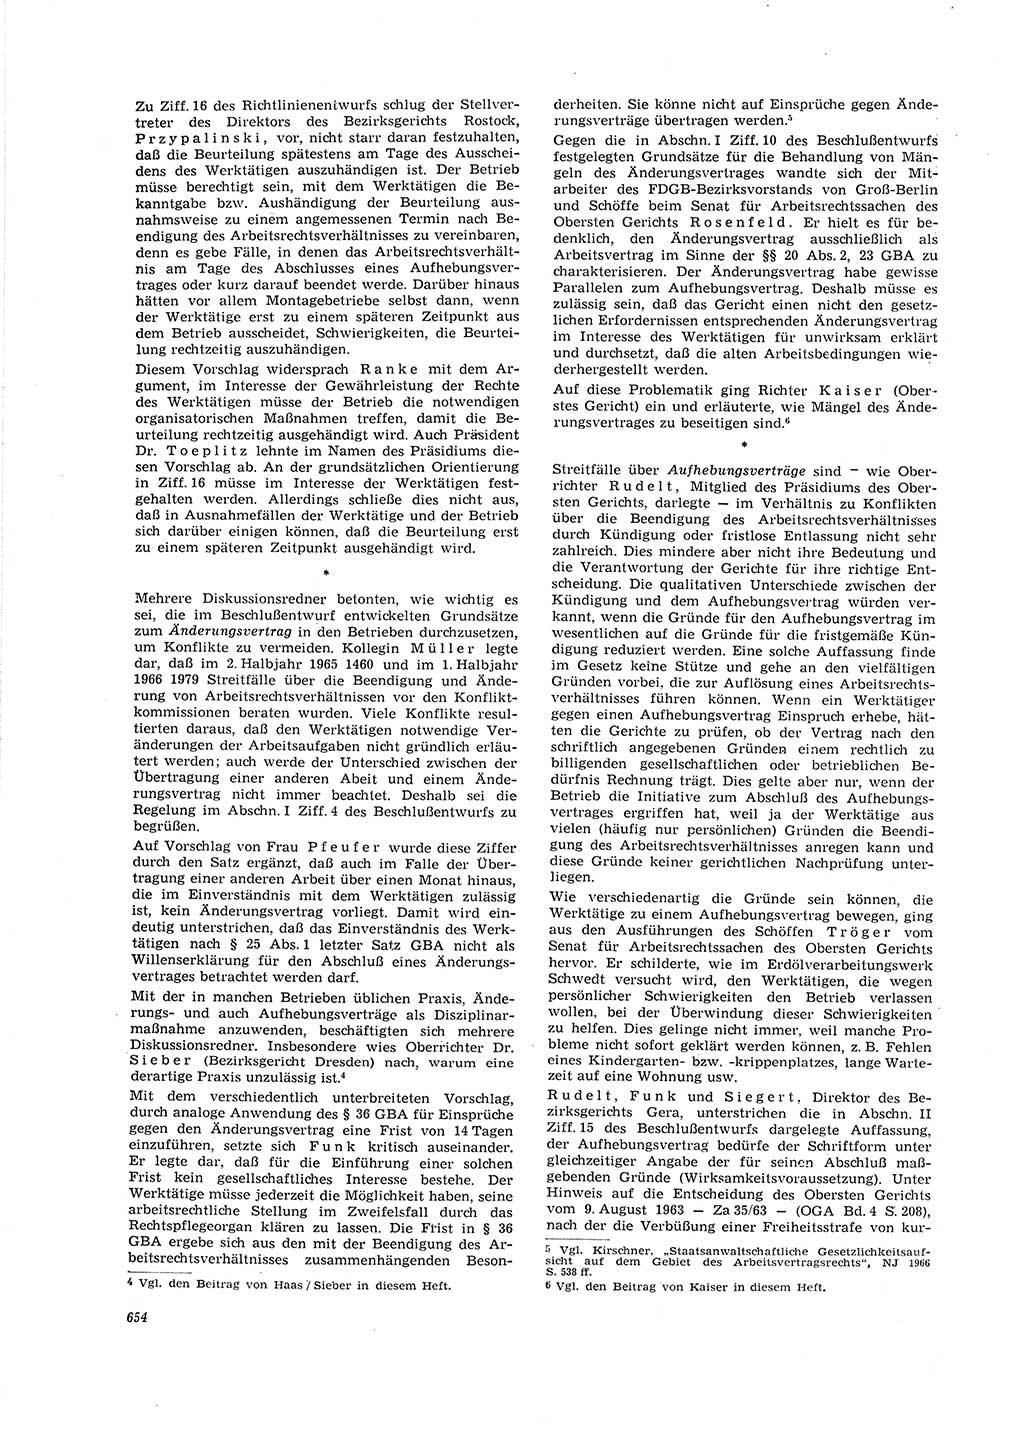 Neue Justiz (NJ), Zeitschrift für Recht und Rechtswissenschaft [Deutsche Demokratische Republik (DDR)], 20. Jahrgang 1966, Seite 654 (NJ DDR 1966, S. 654)